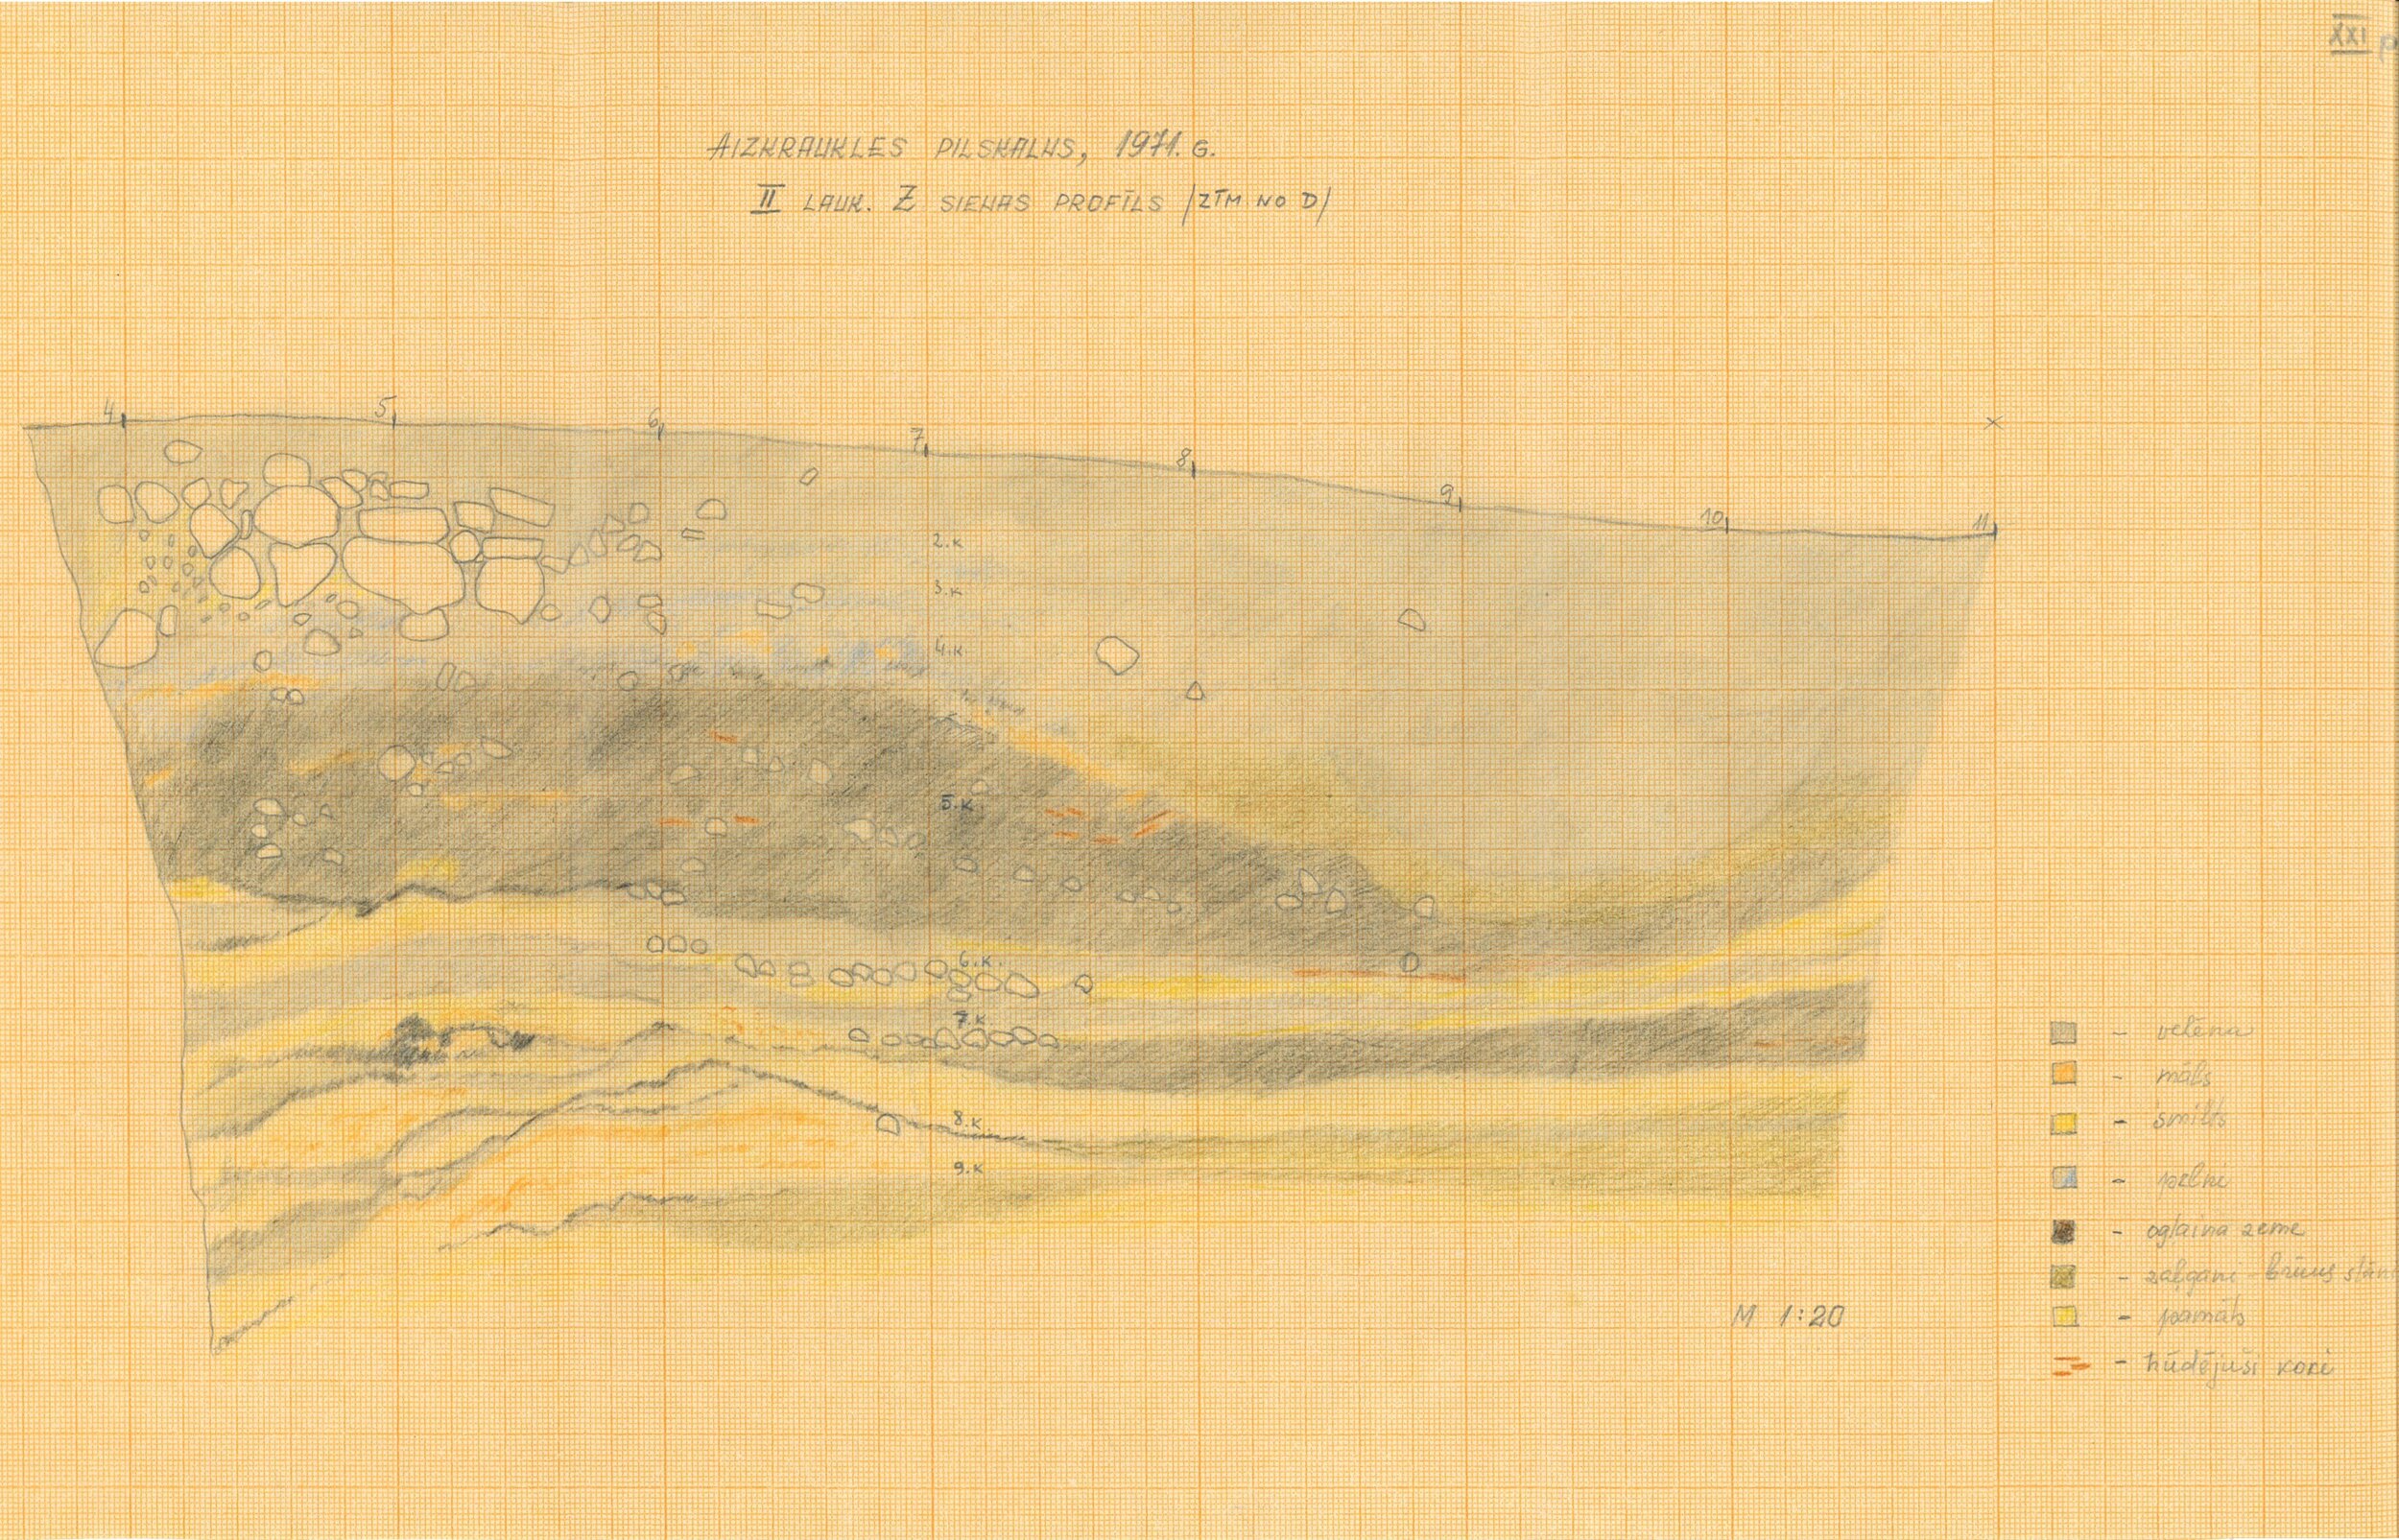 II laukuma ziemeļu sienas profils. Aizkraukles pilskalns. 1971. g.